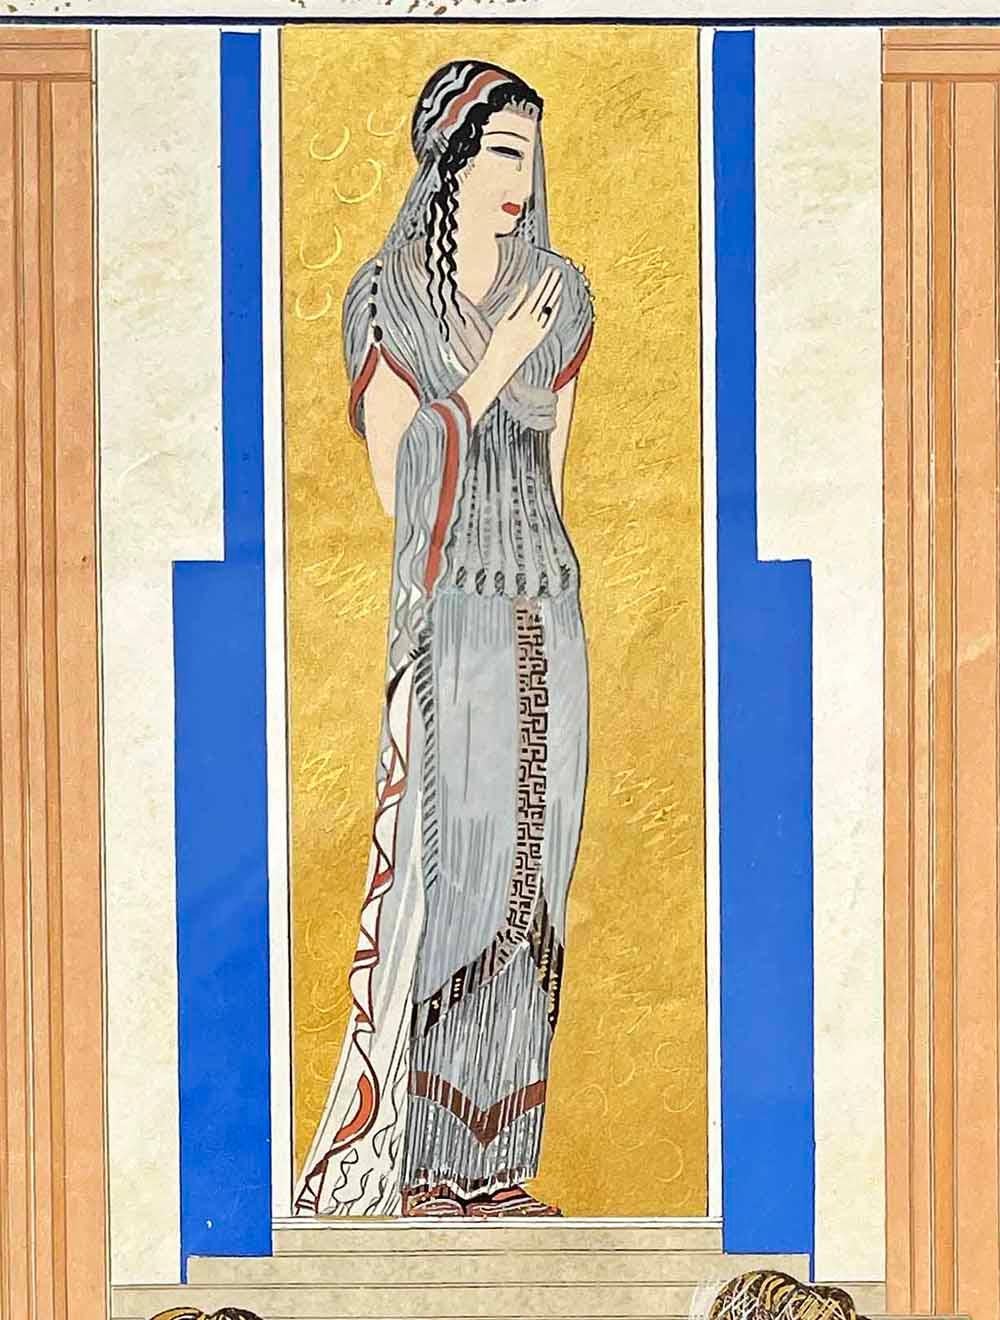 Dieses detailreiche Gemälde einer griechischen Göttin in klassischem Gewand, die auf einer Treppe steht und von zwei schwer verschleierten Dienern begleitet wird, stammt von François-Louis Schmied, der zusammen mit Georges Barbier zu den beiden